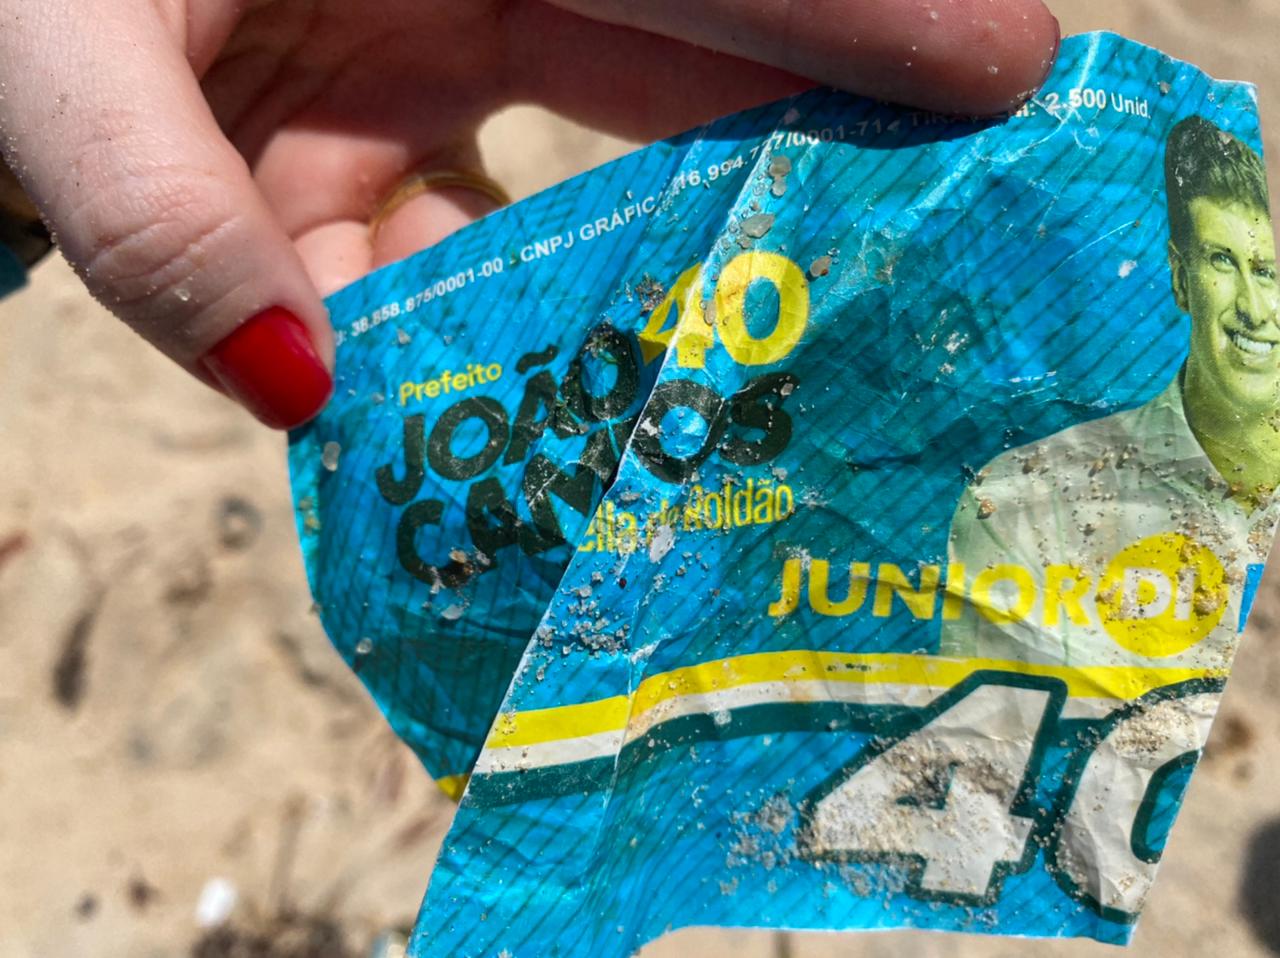 Fotos indicam possível origem de lixo achado nas praias do RN; veja